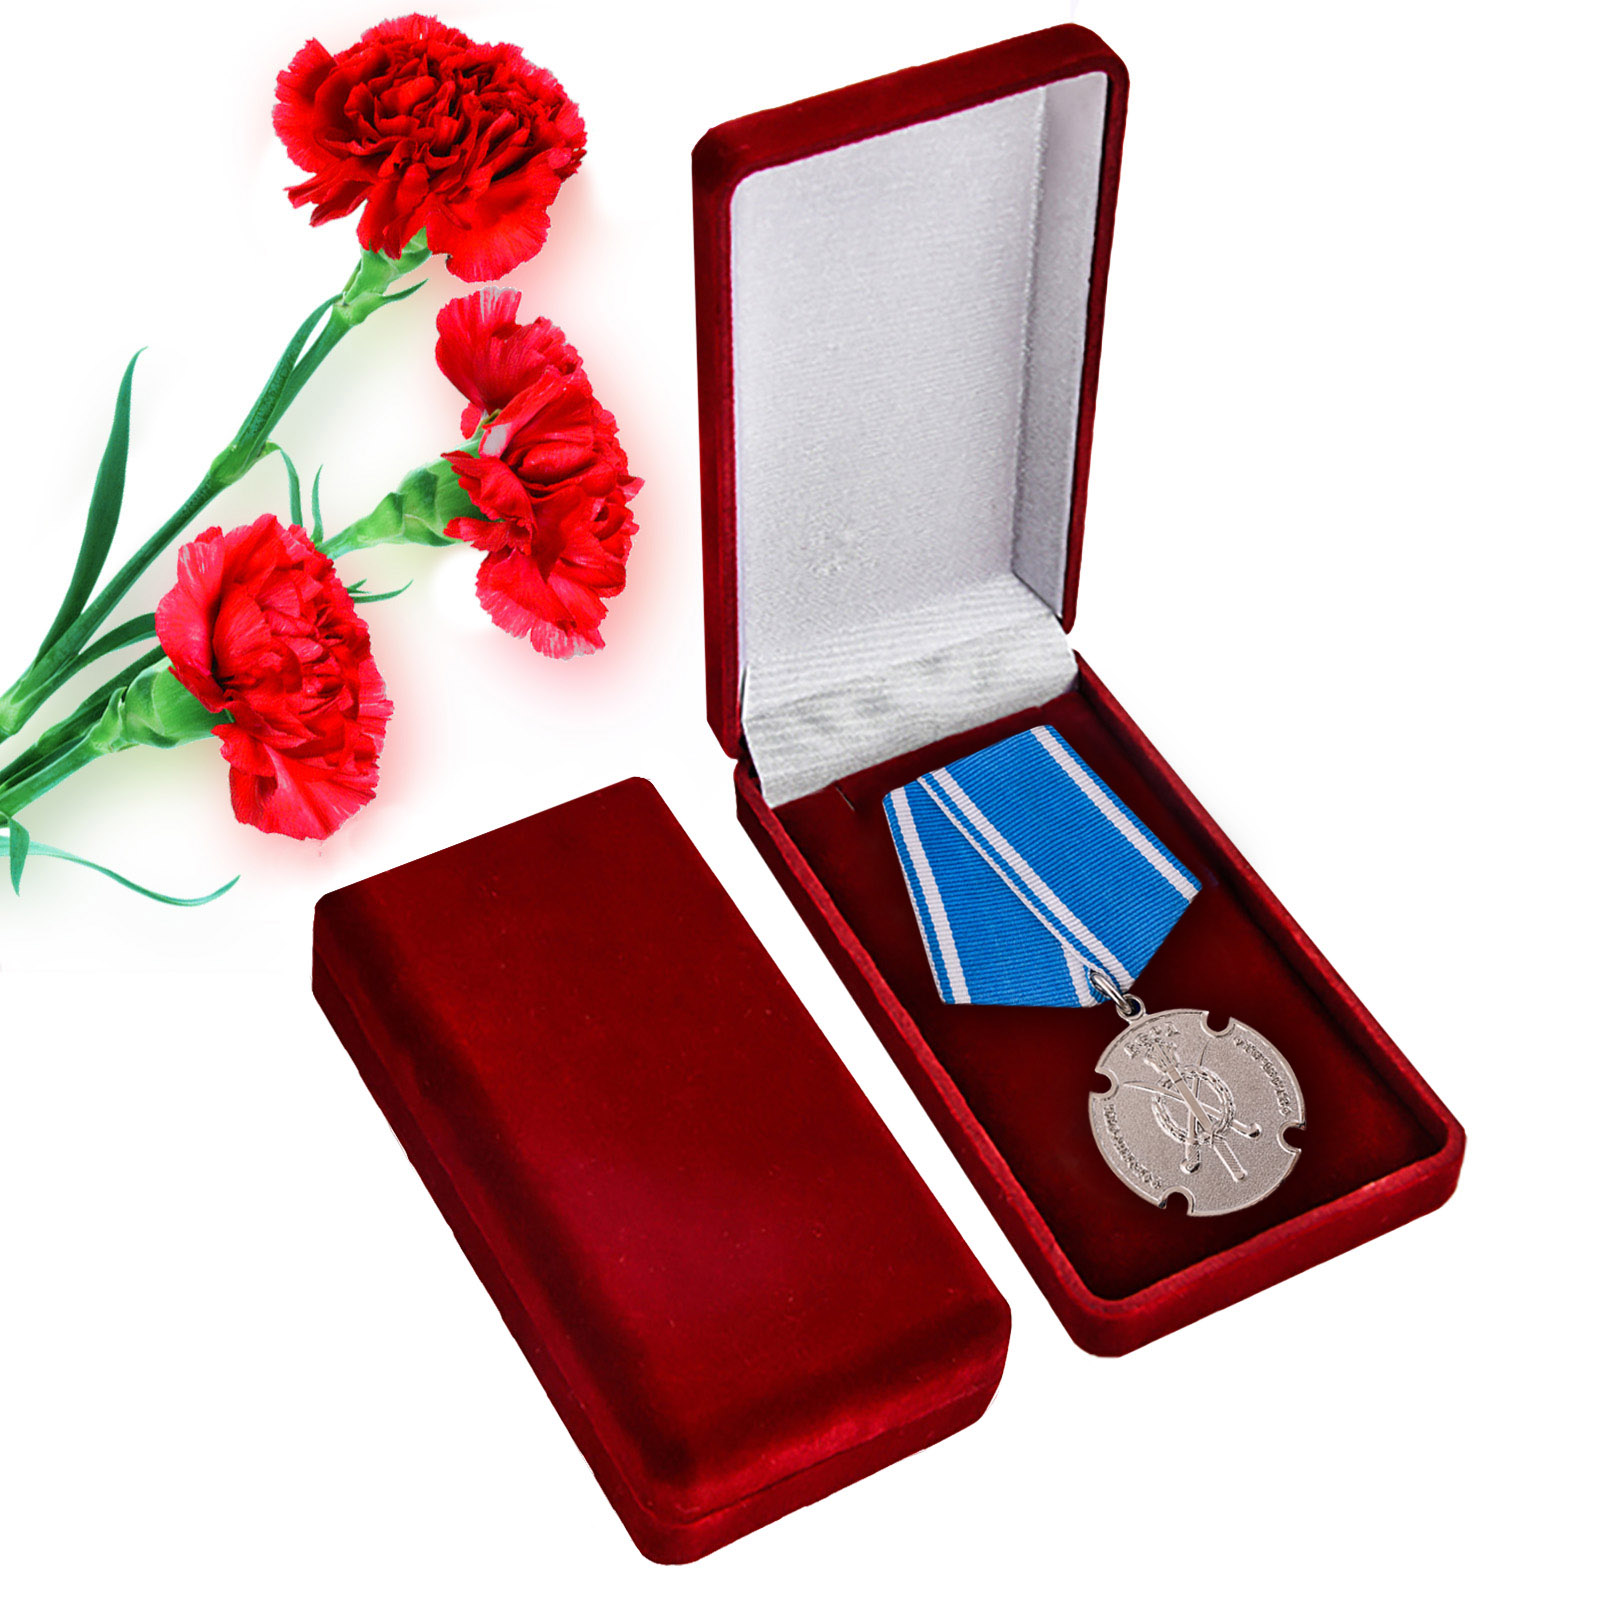 Медаль "За государственную службу" казачества России